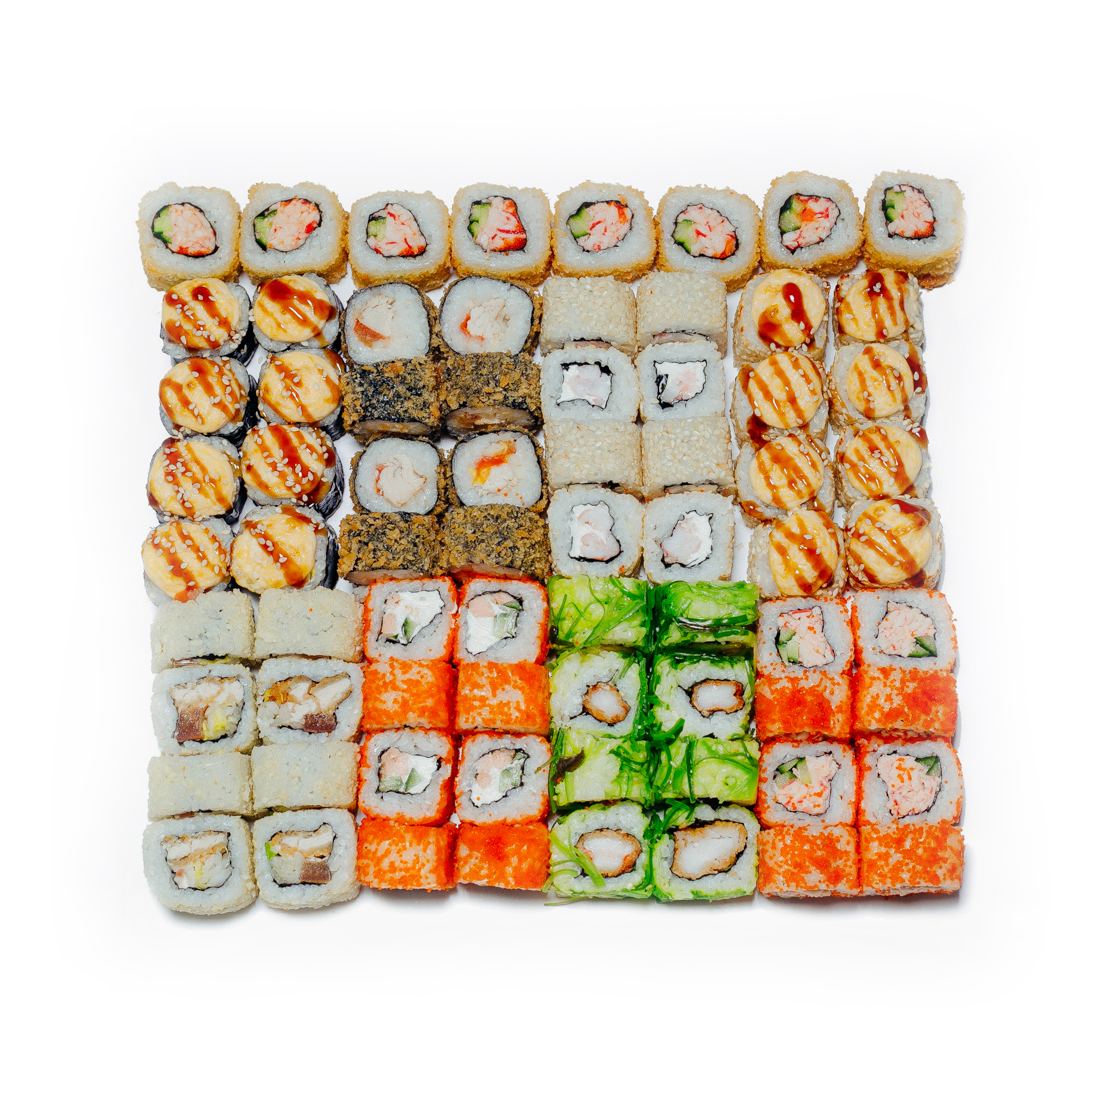 Заказать суши с доставкой на дом чебоксары фото 1